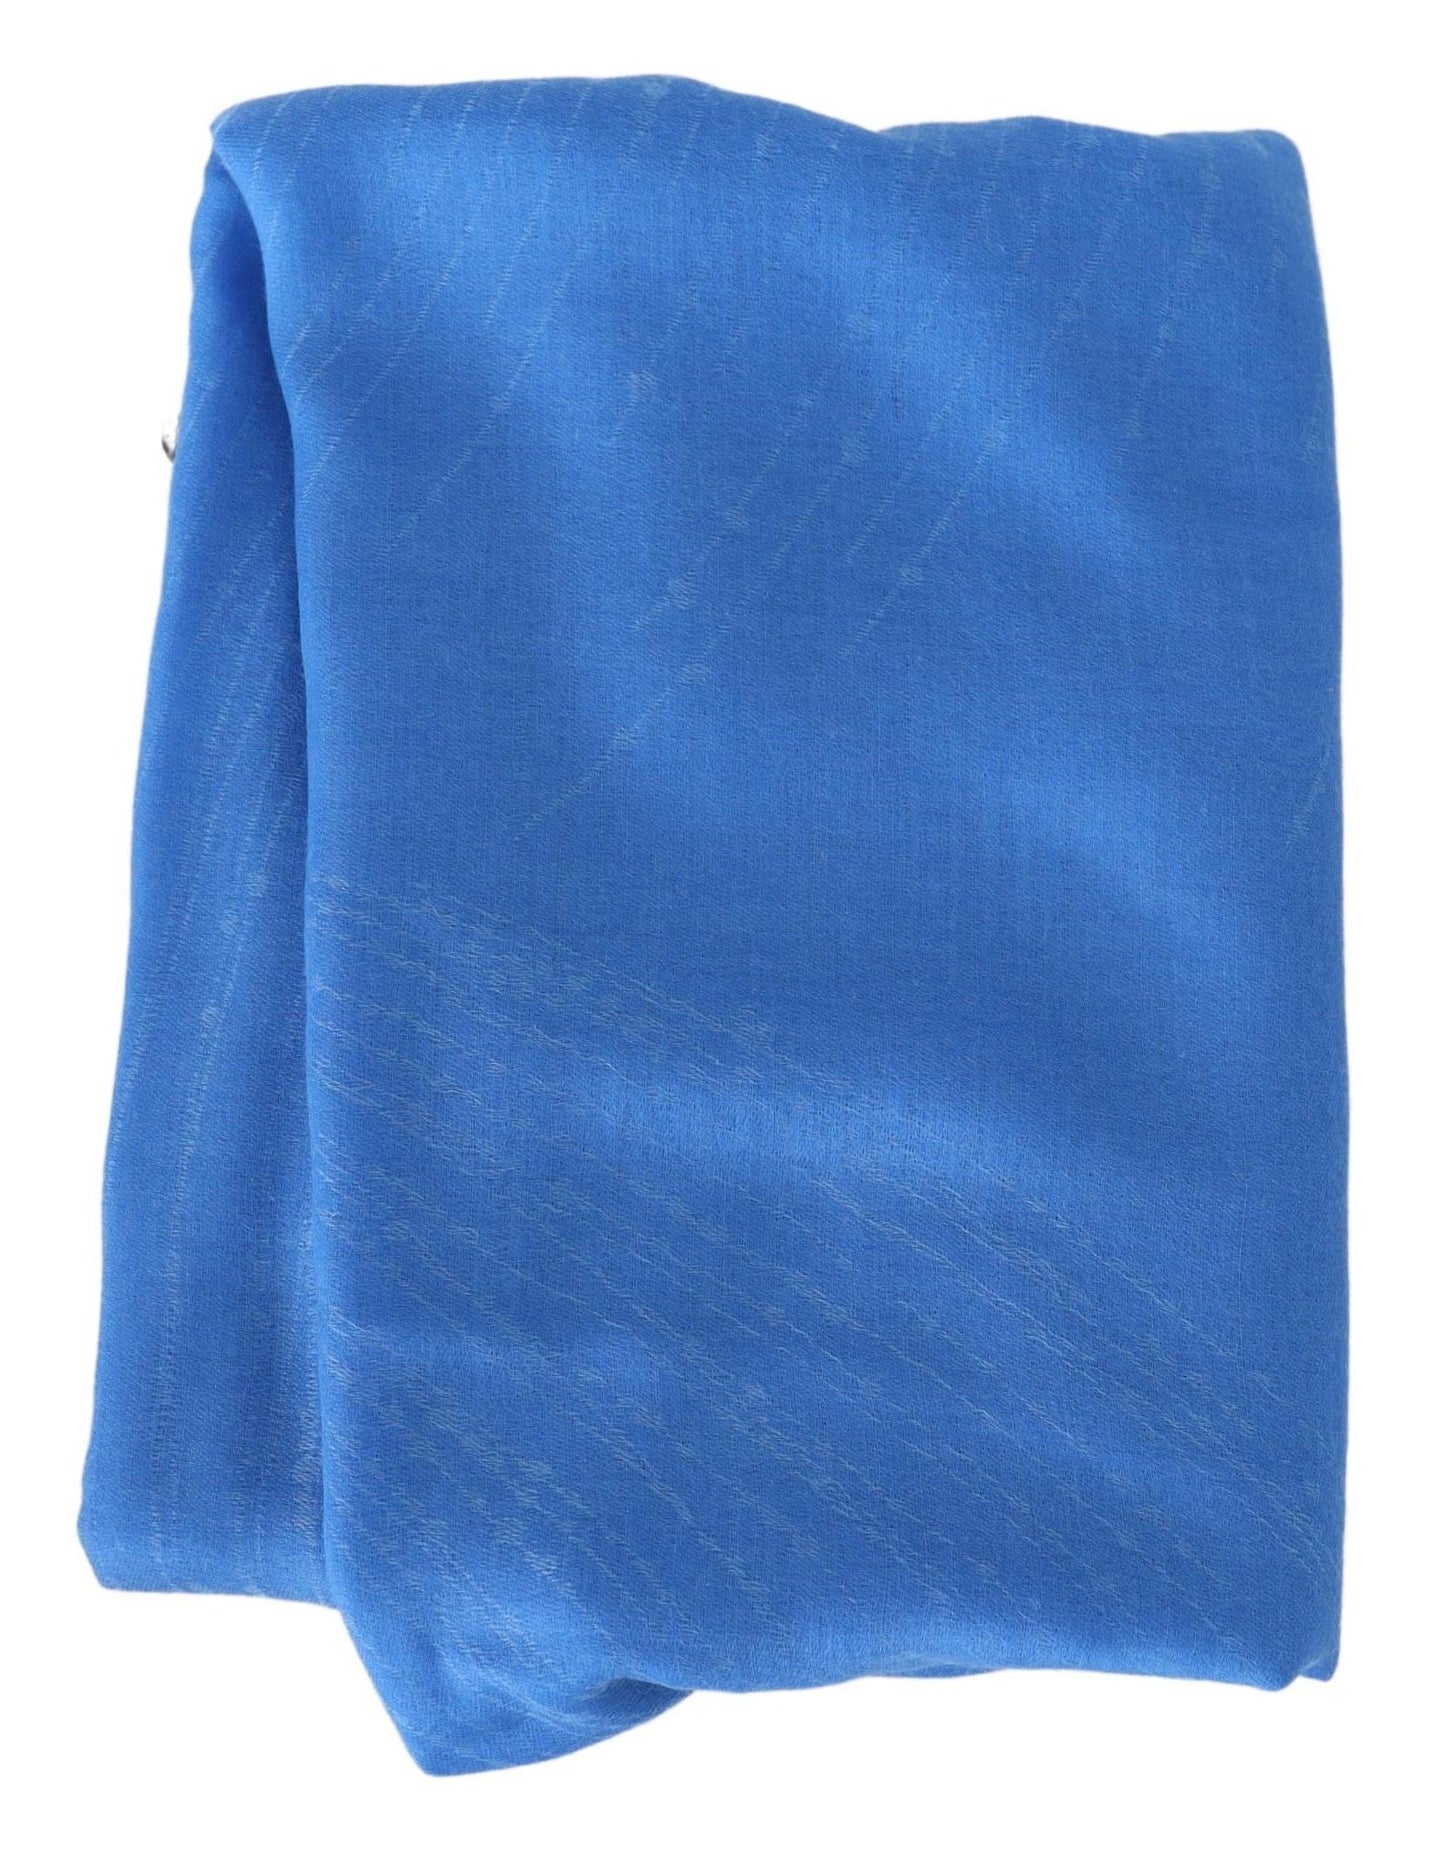 Elegant Cashmere Scarf in Signature Blue